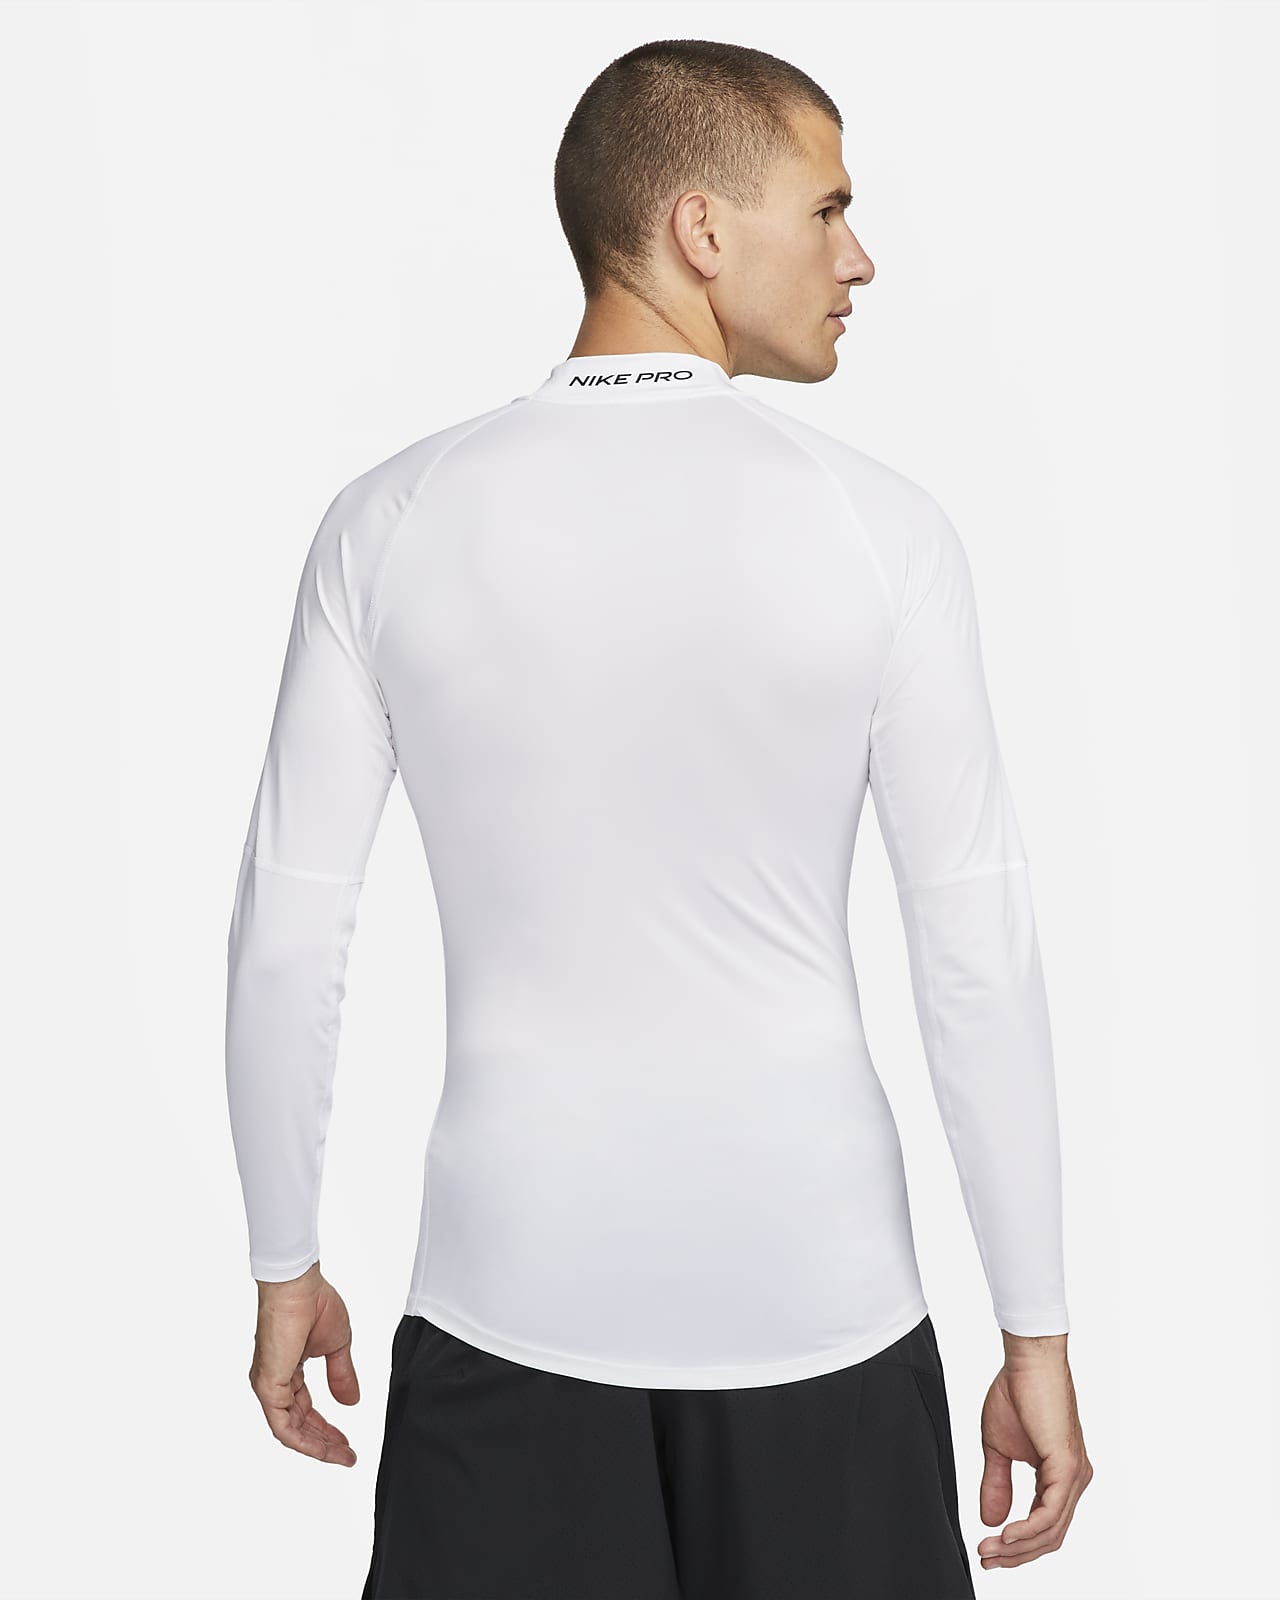 Nike Men's Pro Dri-Fit Slim Fit Long-Sleeve Top Black/White